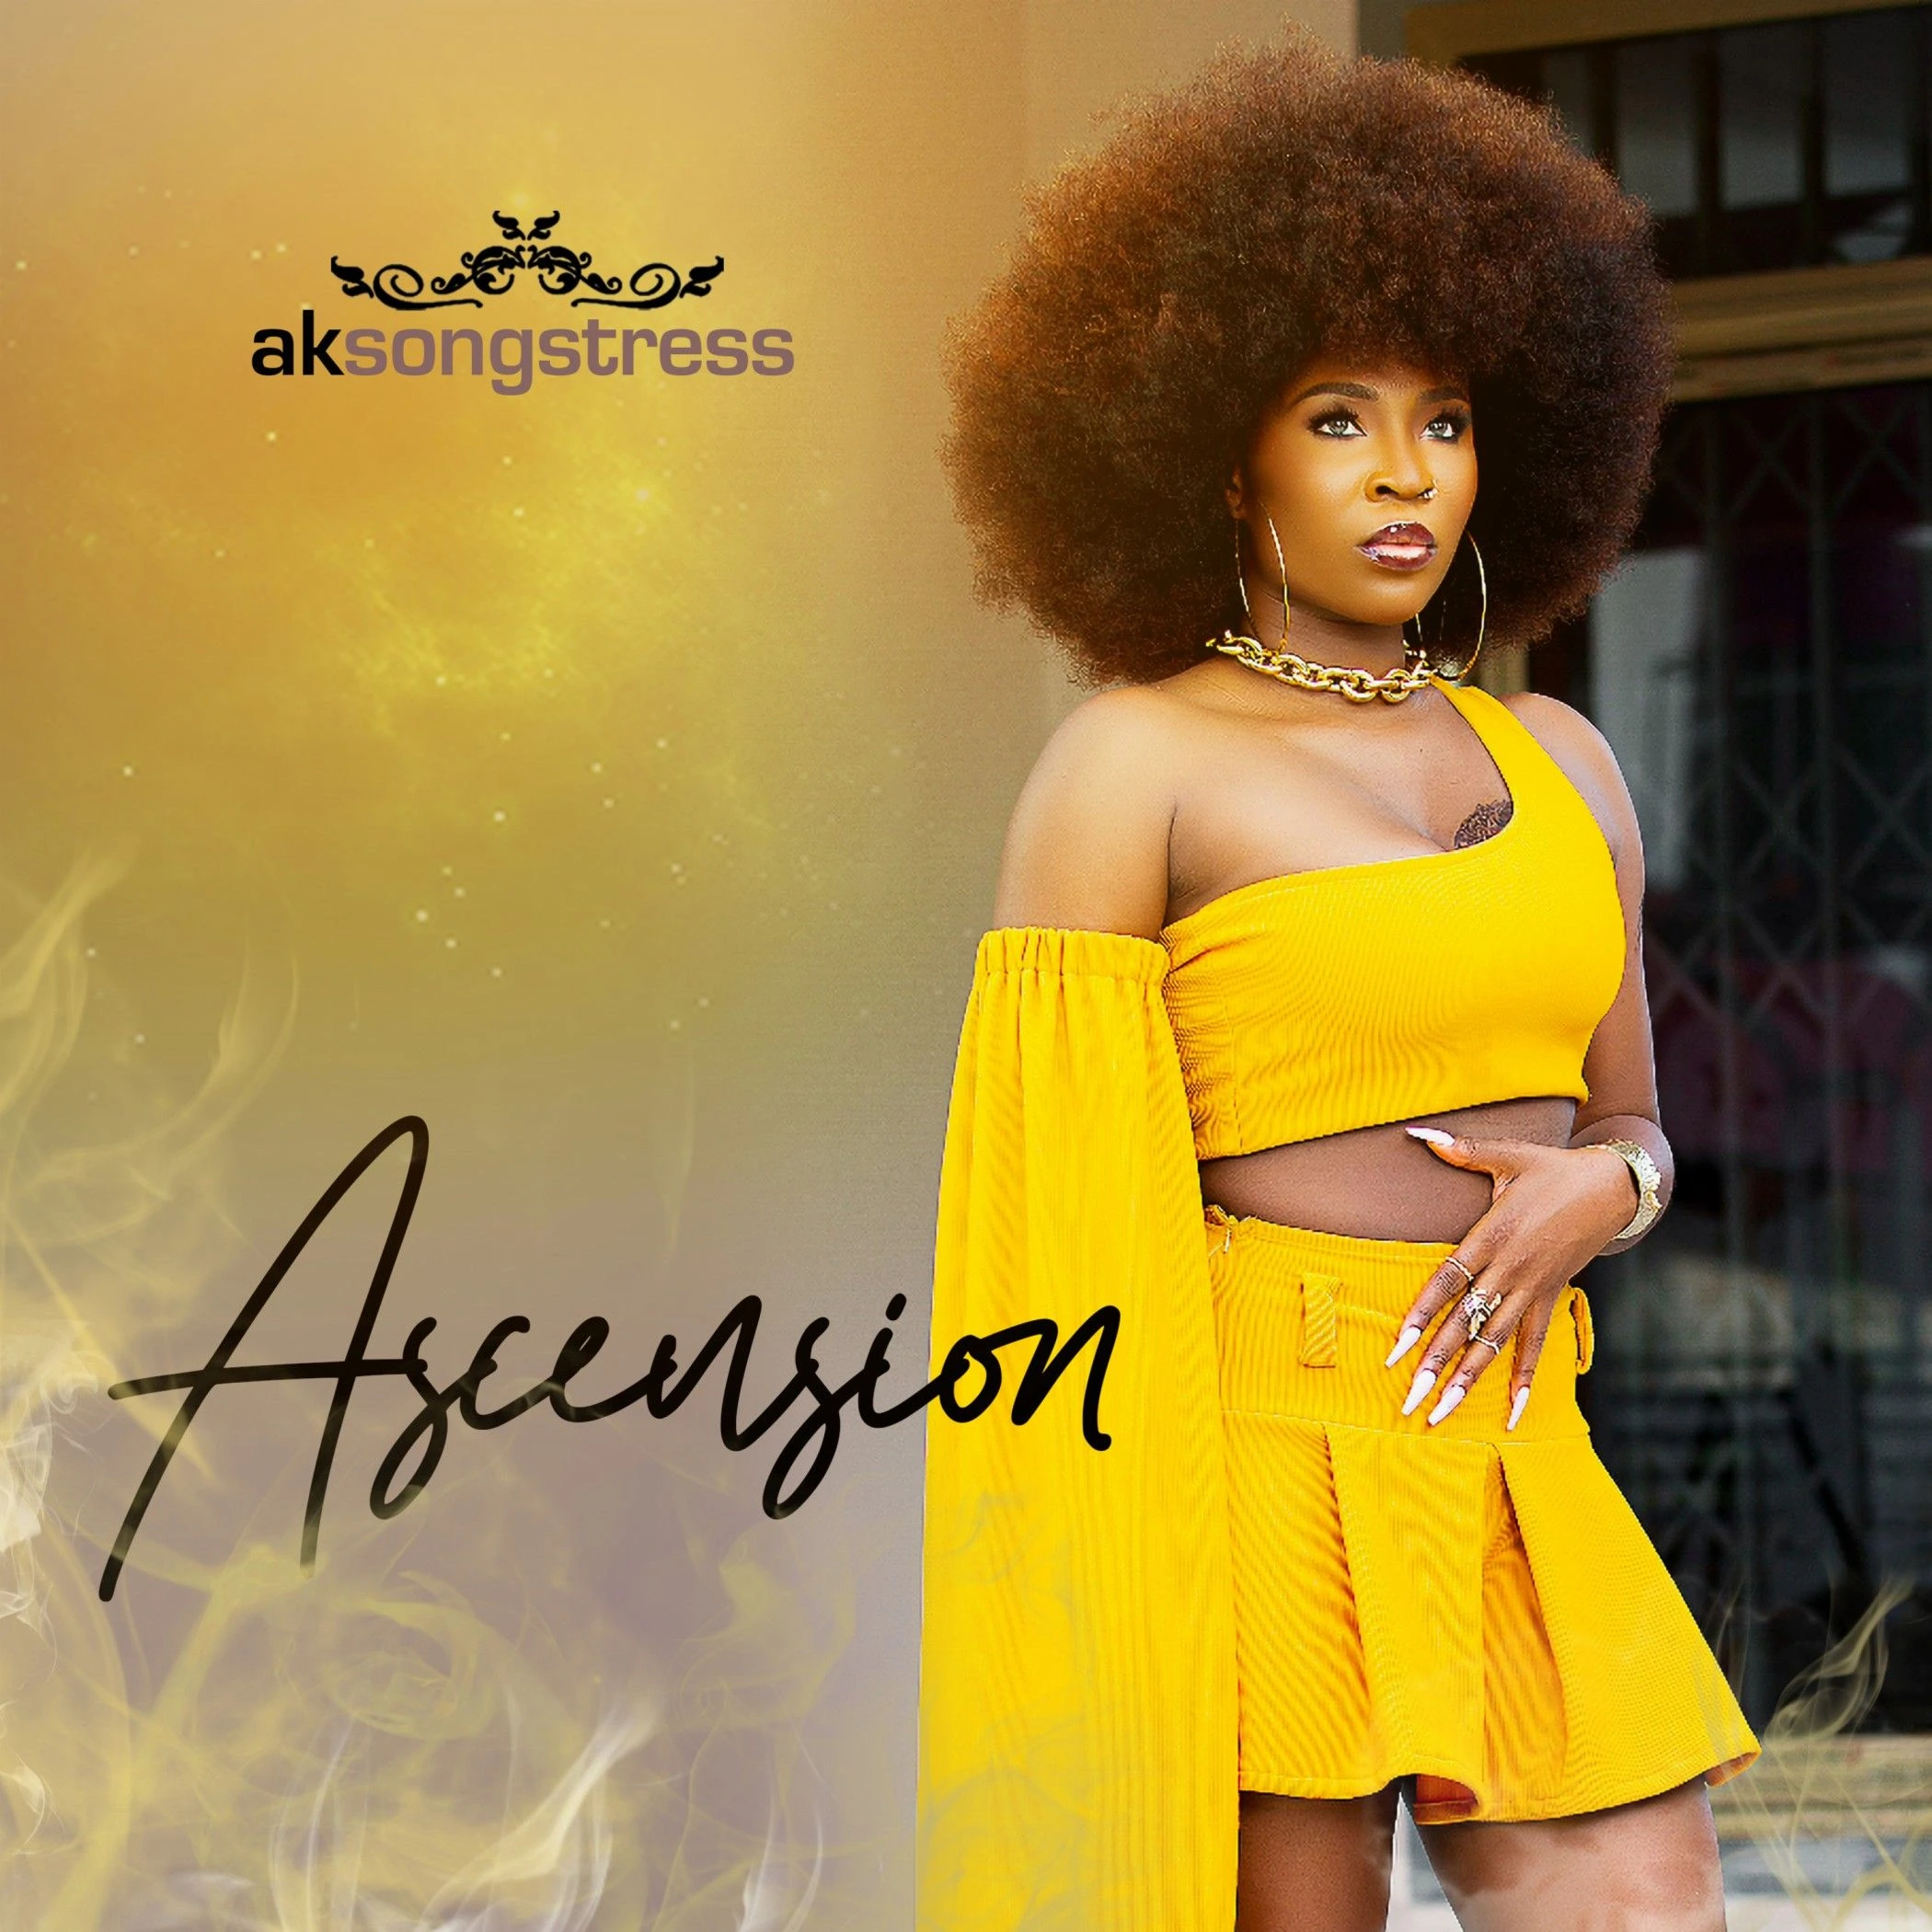 Ak Songstress – Ascension (EP)